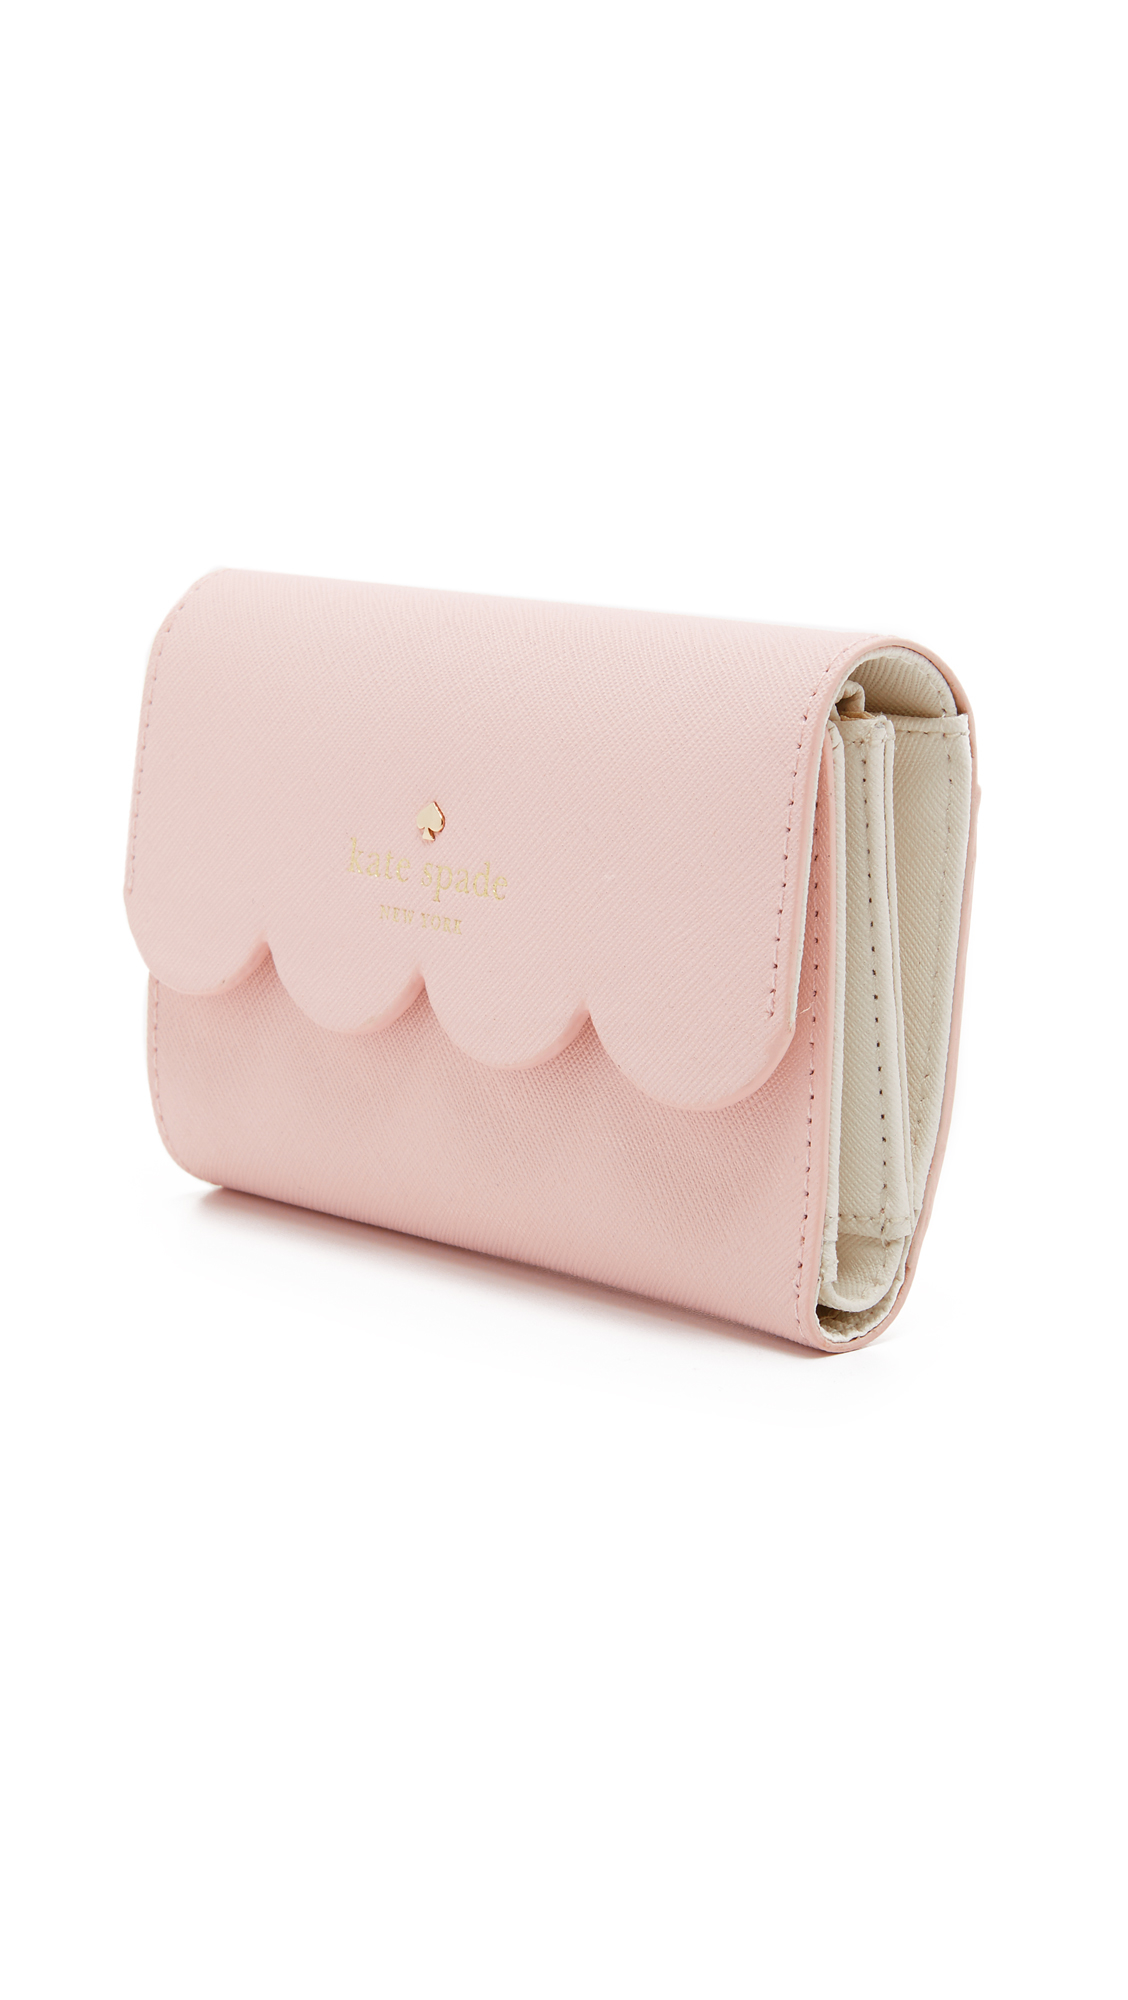 Kate Spade Leather Kieran Wallet in Pink - Lyst